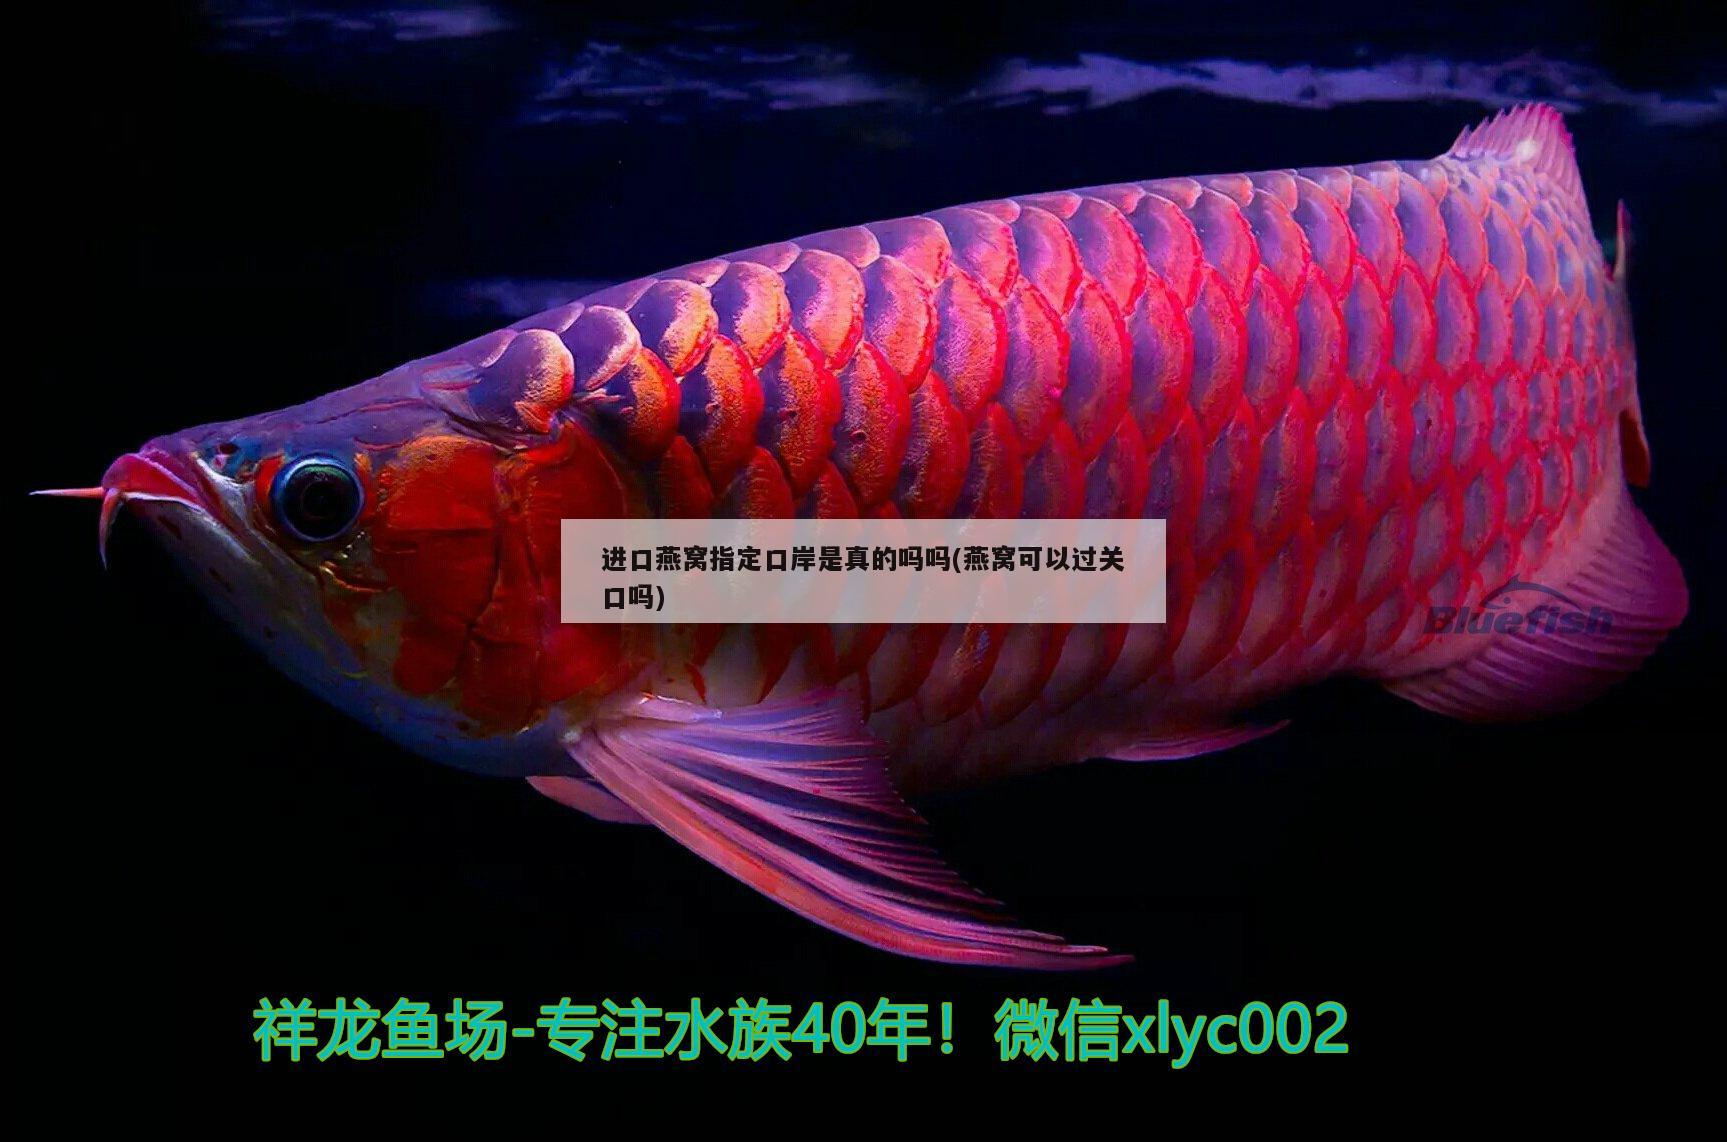 沧州水族馆请大神们帮帮忙看看这招财鱼得了什么病用什么药好了